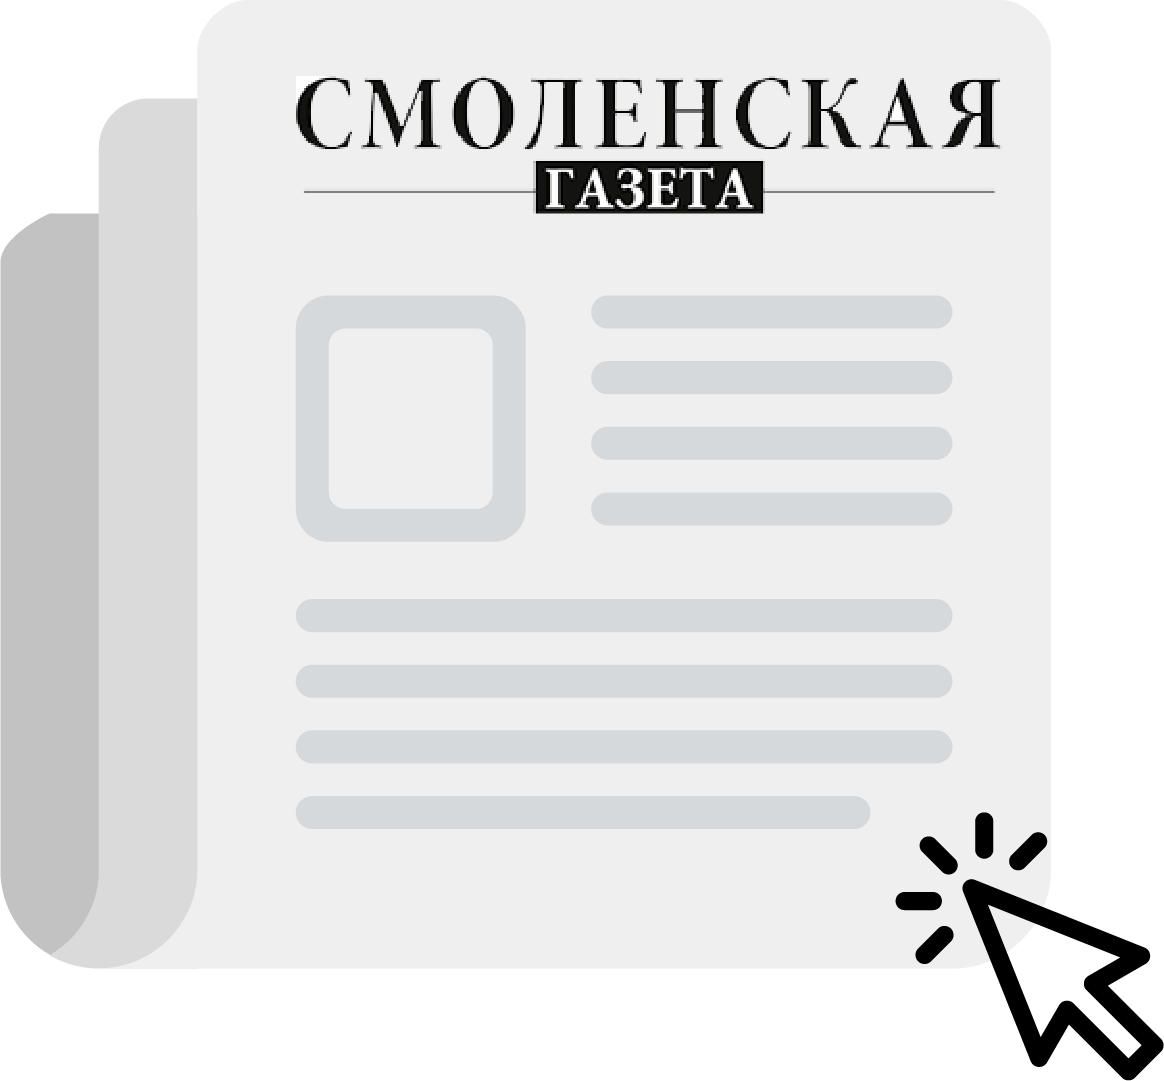 Смоленская газета №46 (1381)